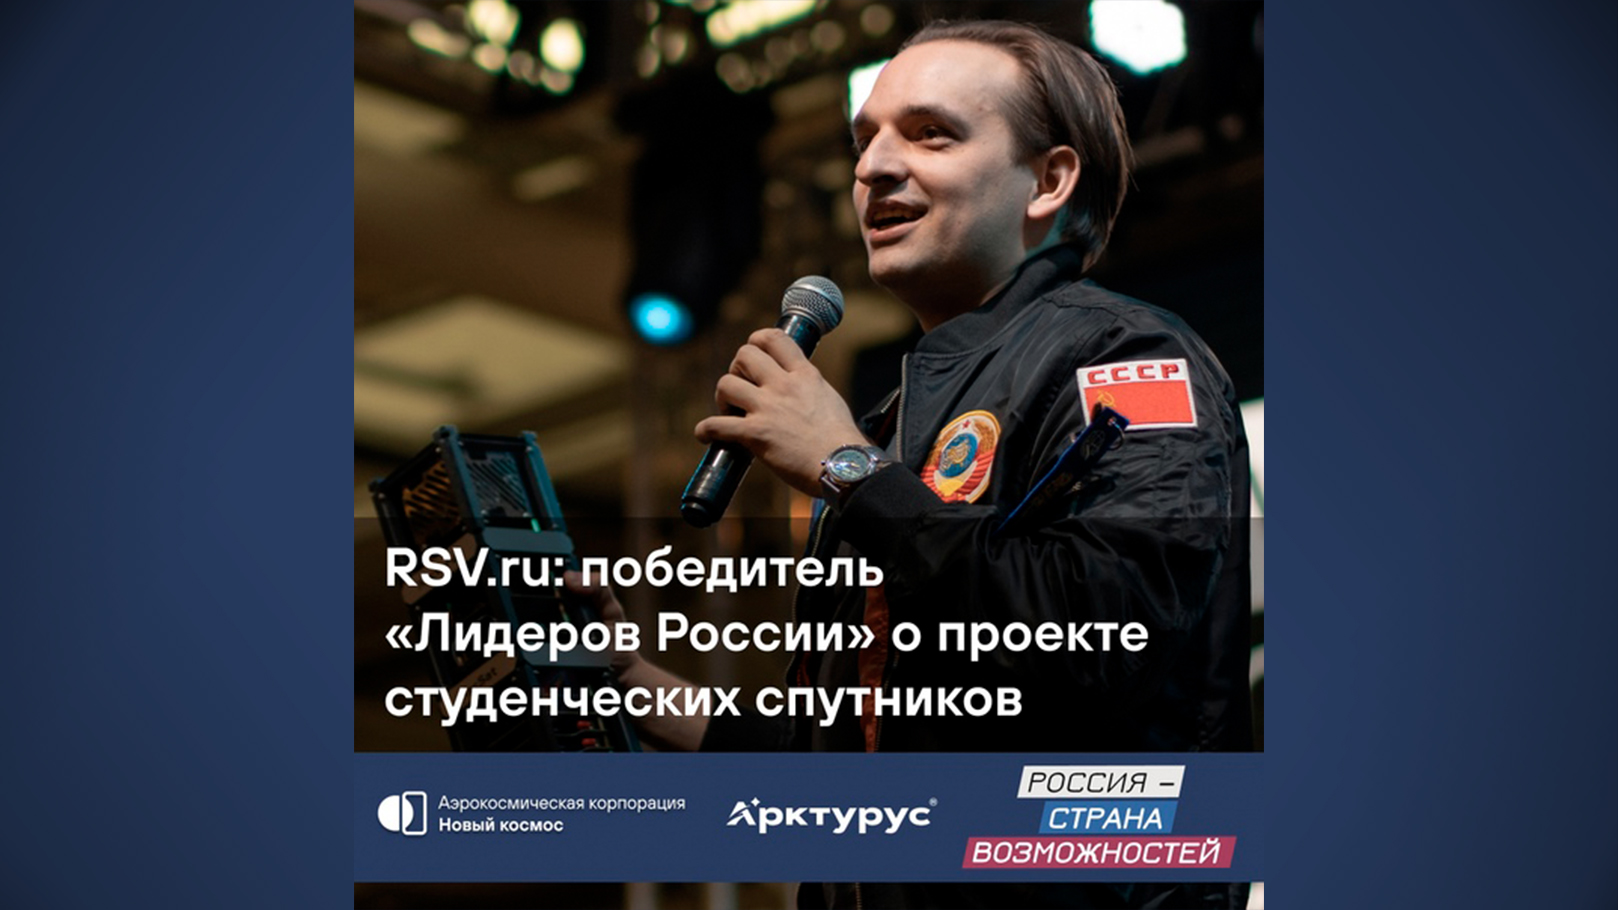 RSV.ru: победитель "Лидеры России" о проекте студенческих спутников